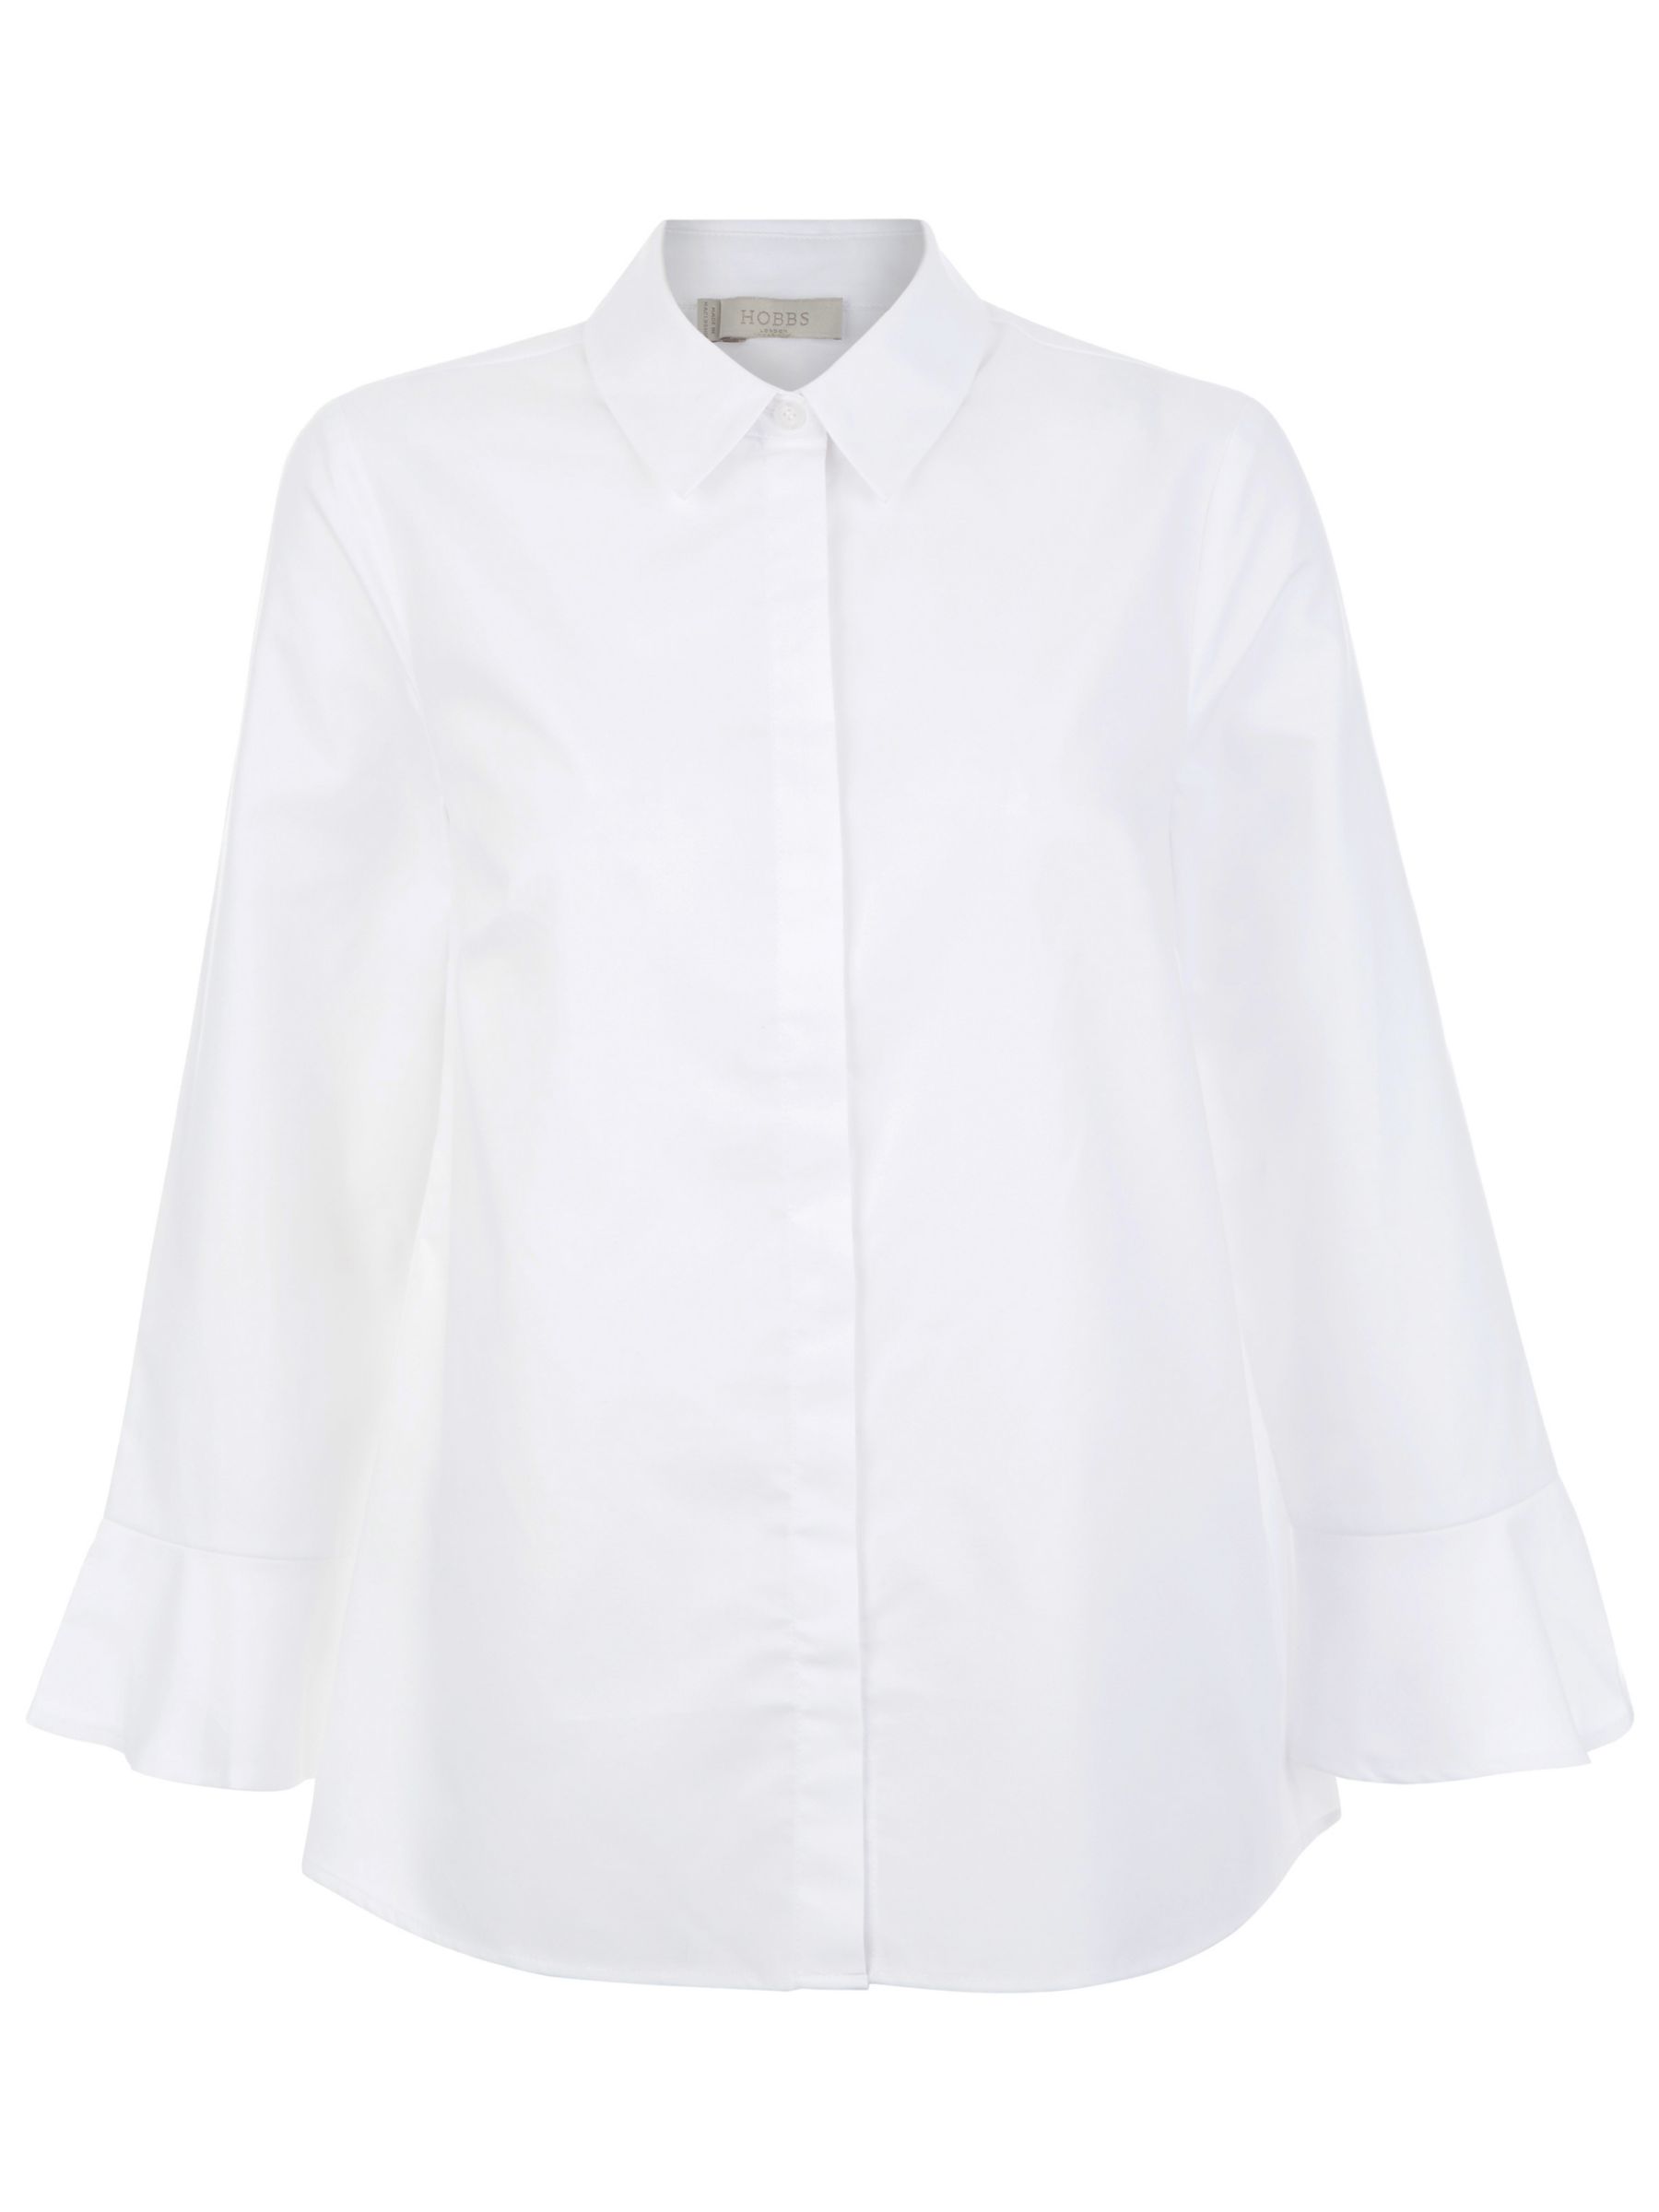 Hobbs Matilda Shirt, White